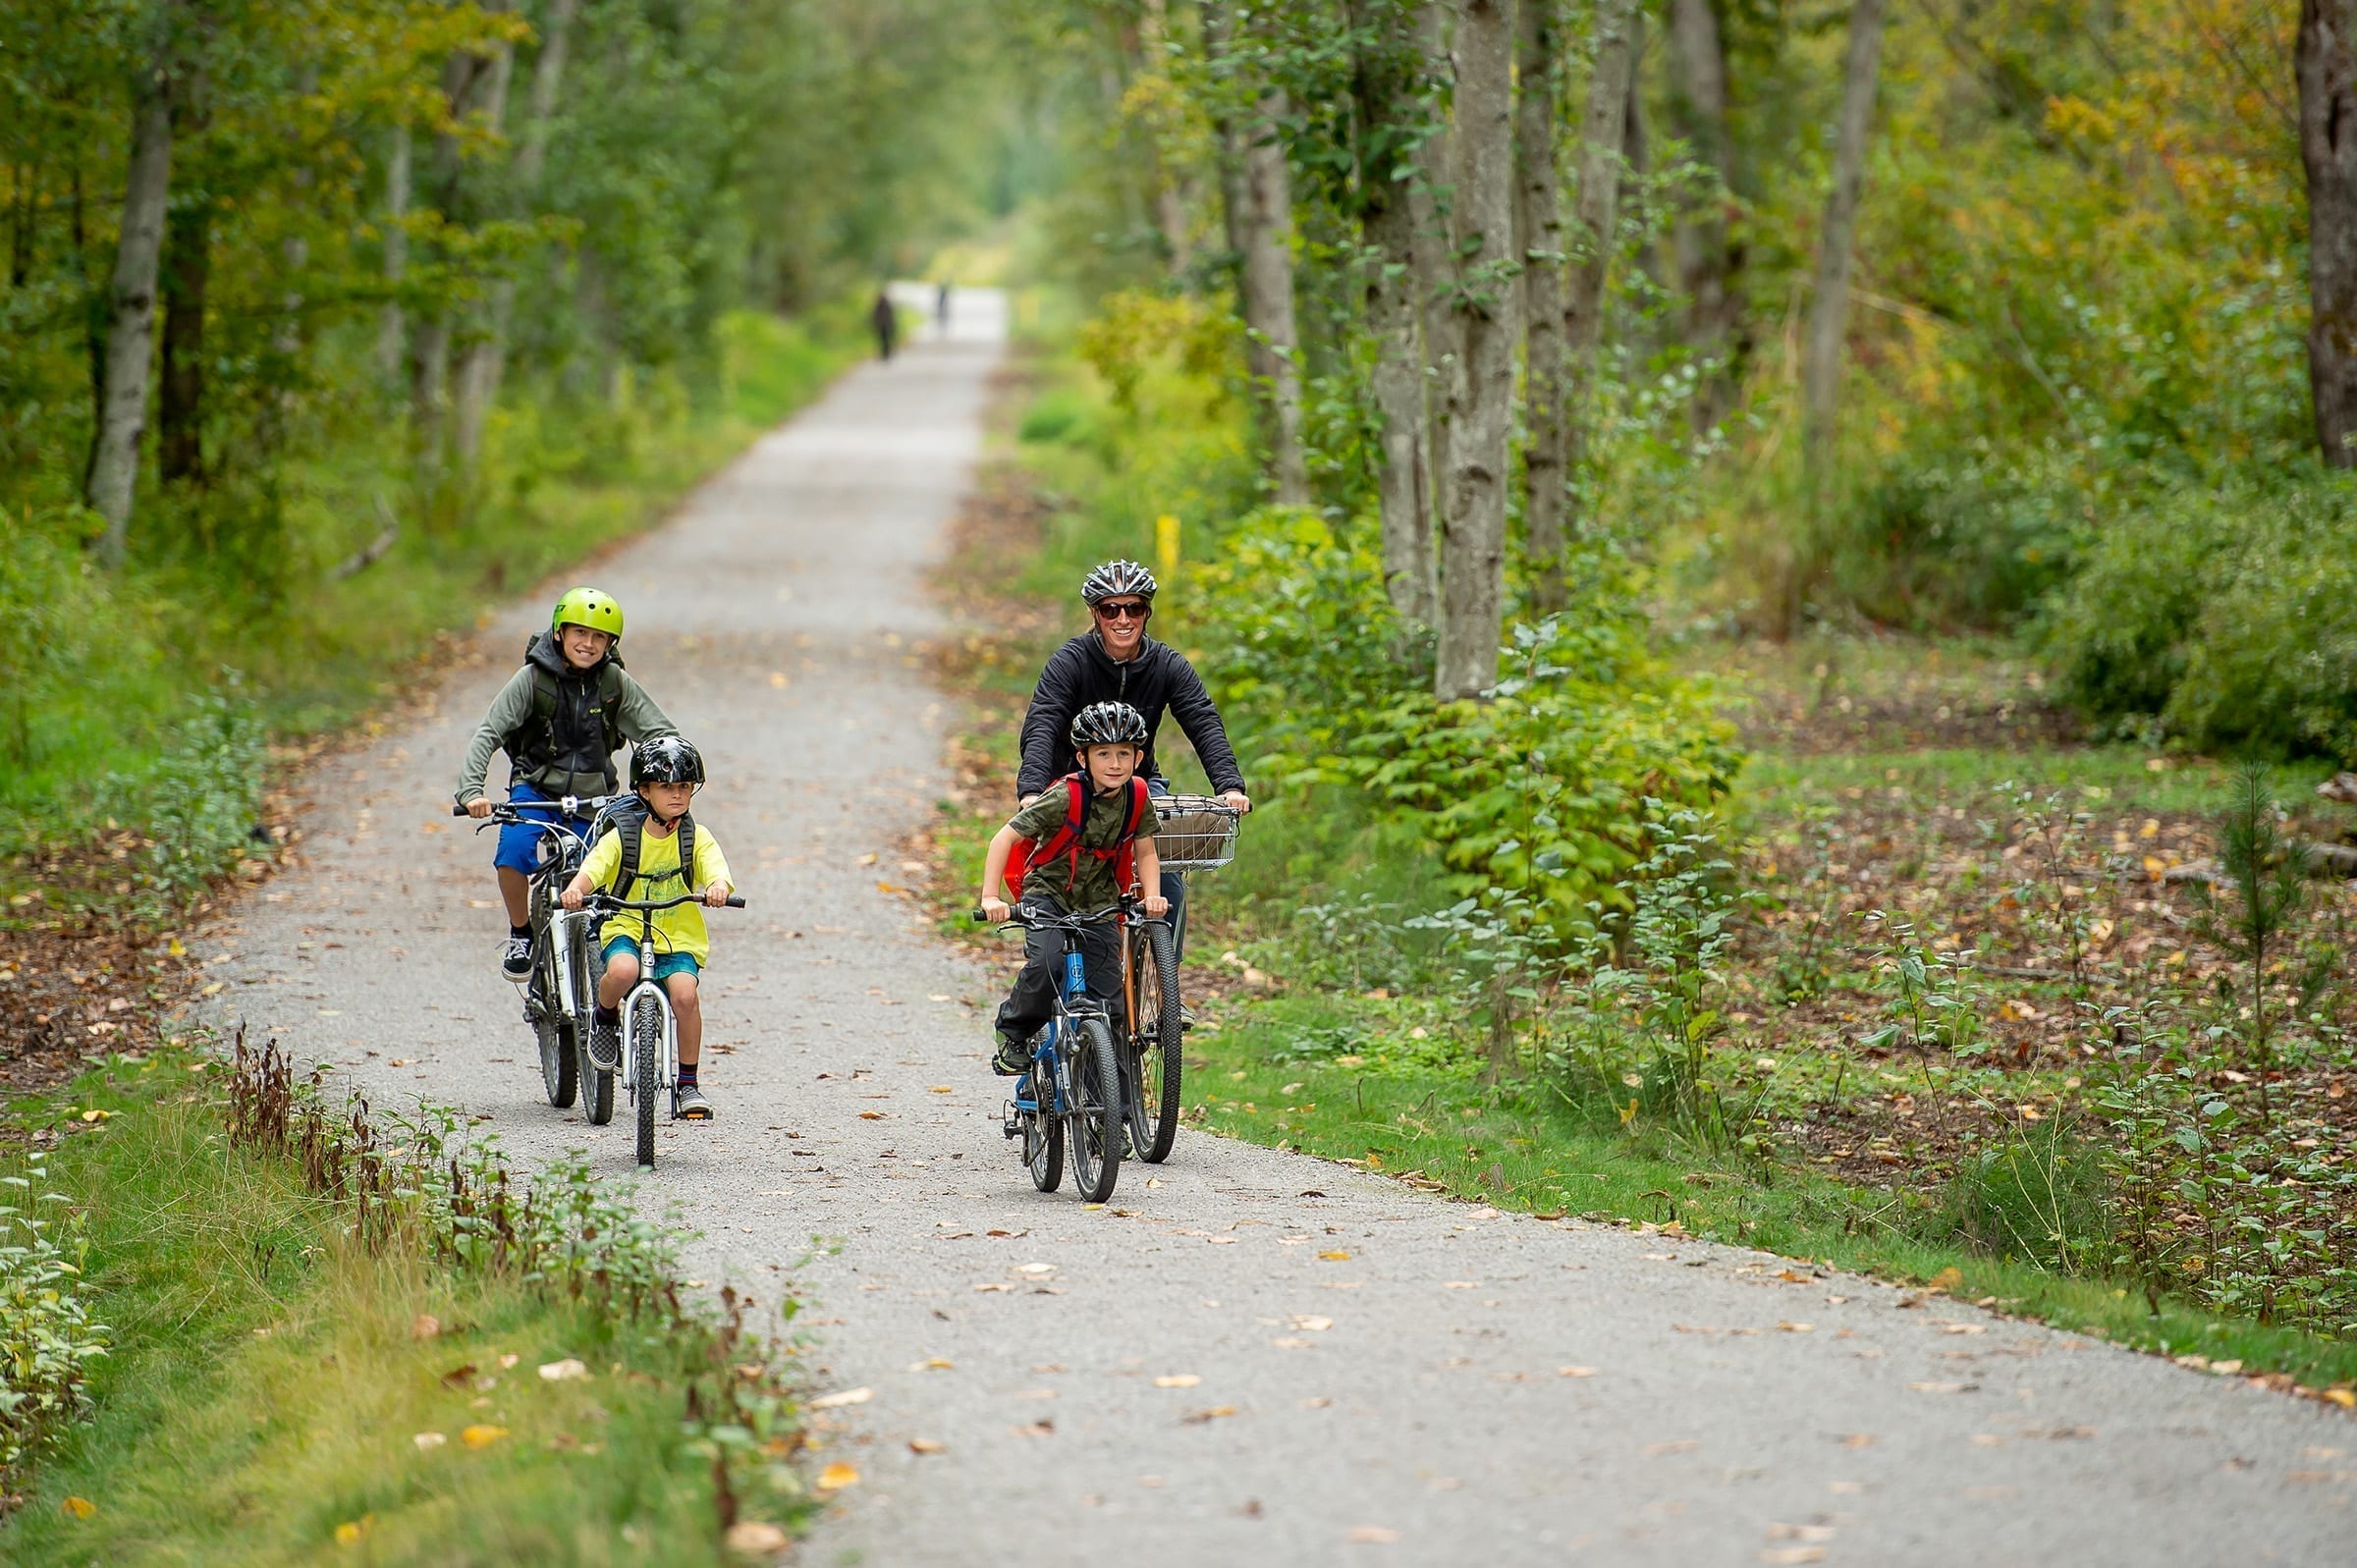 Family of four biking on trail